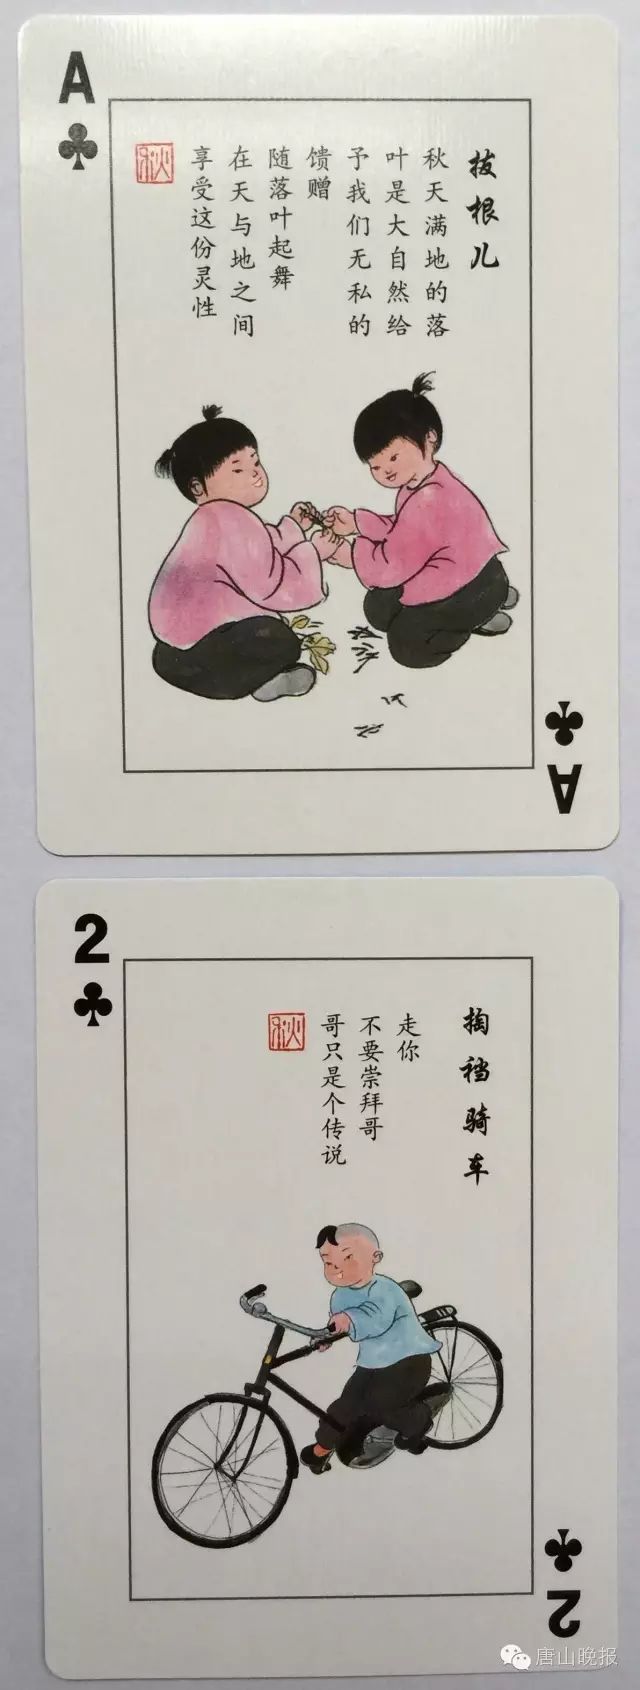 【唐山城事】唐山牛人:发明特殊的扑克牌勾起太多人童年回忆!